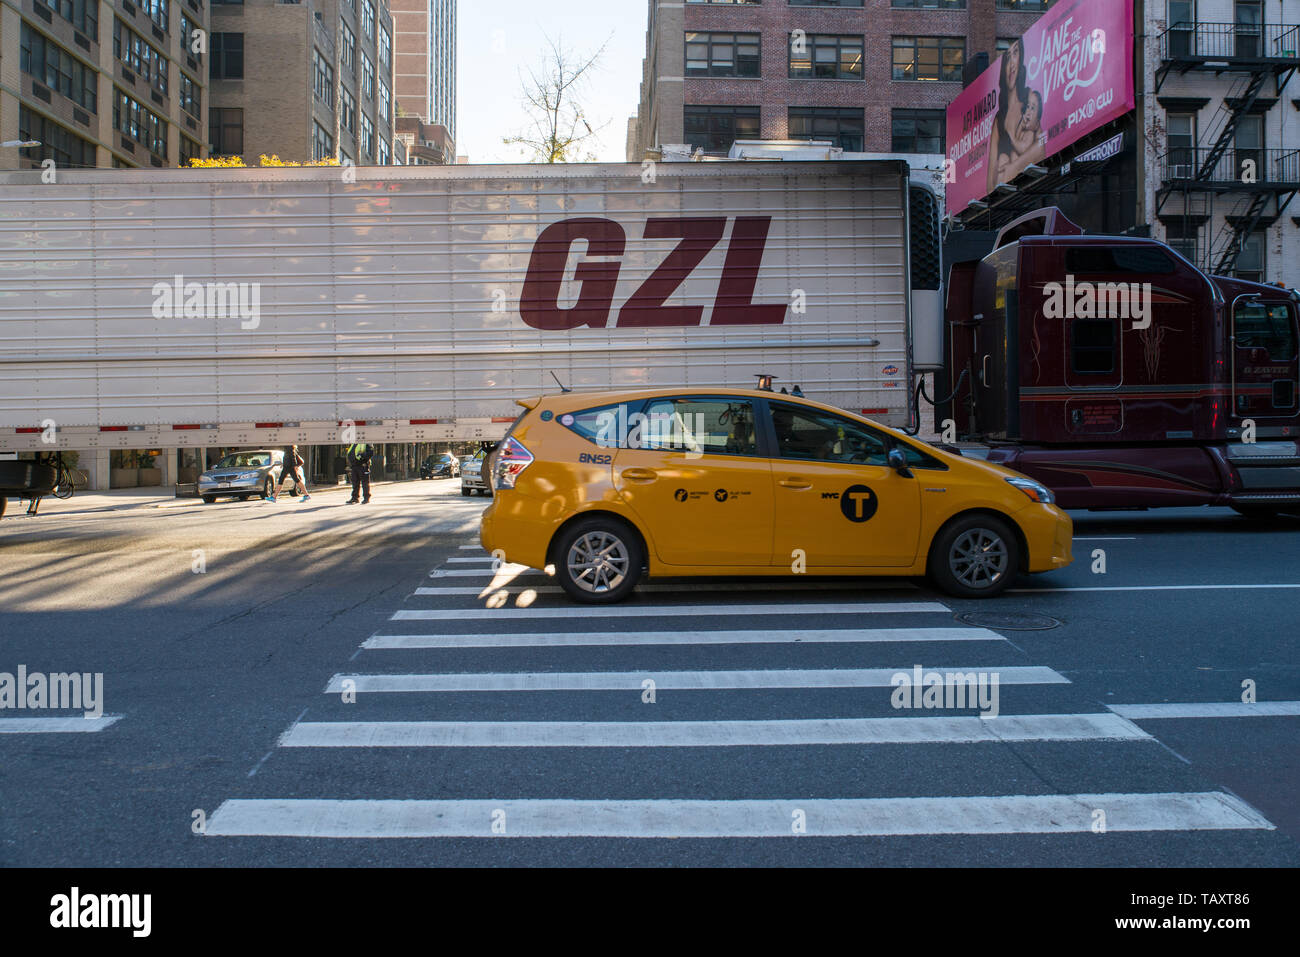 Fahren Sie mit einem Taxi, das einen LKW oder einen Lastwagen in Manhattan, NYC, USA führt./ Taxi passing a truck in Manhattan, NYC, USA. Stock Photo